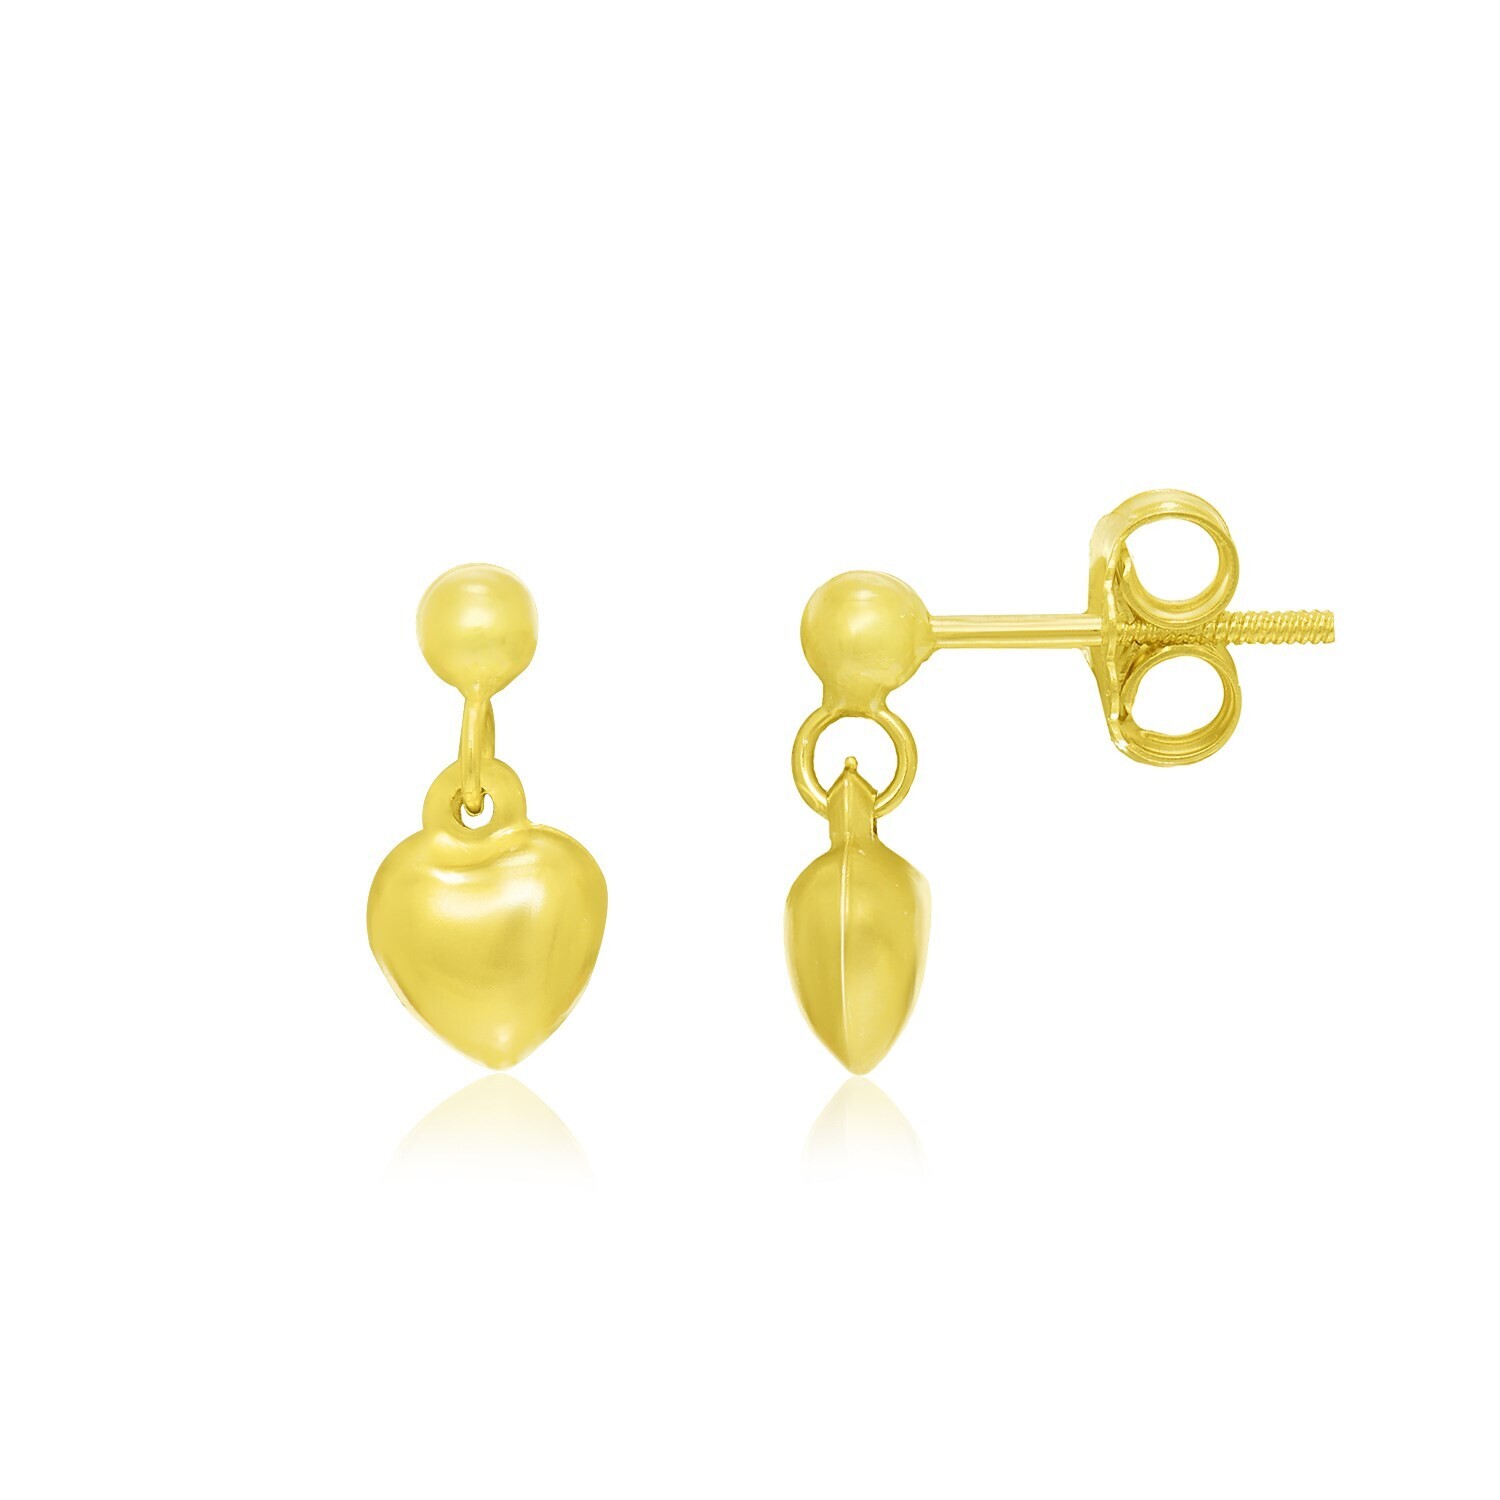 14k Yellow Gold Puffed Heart Children's Dangling Earrings